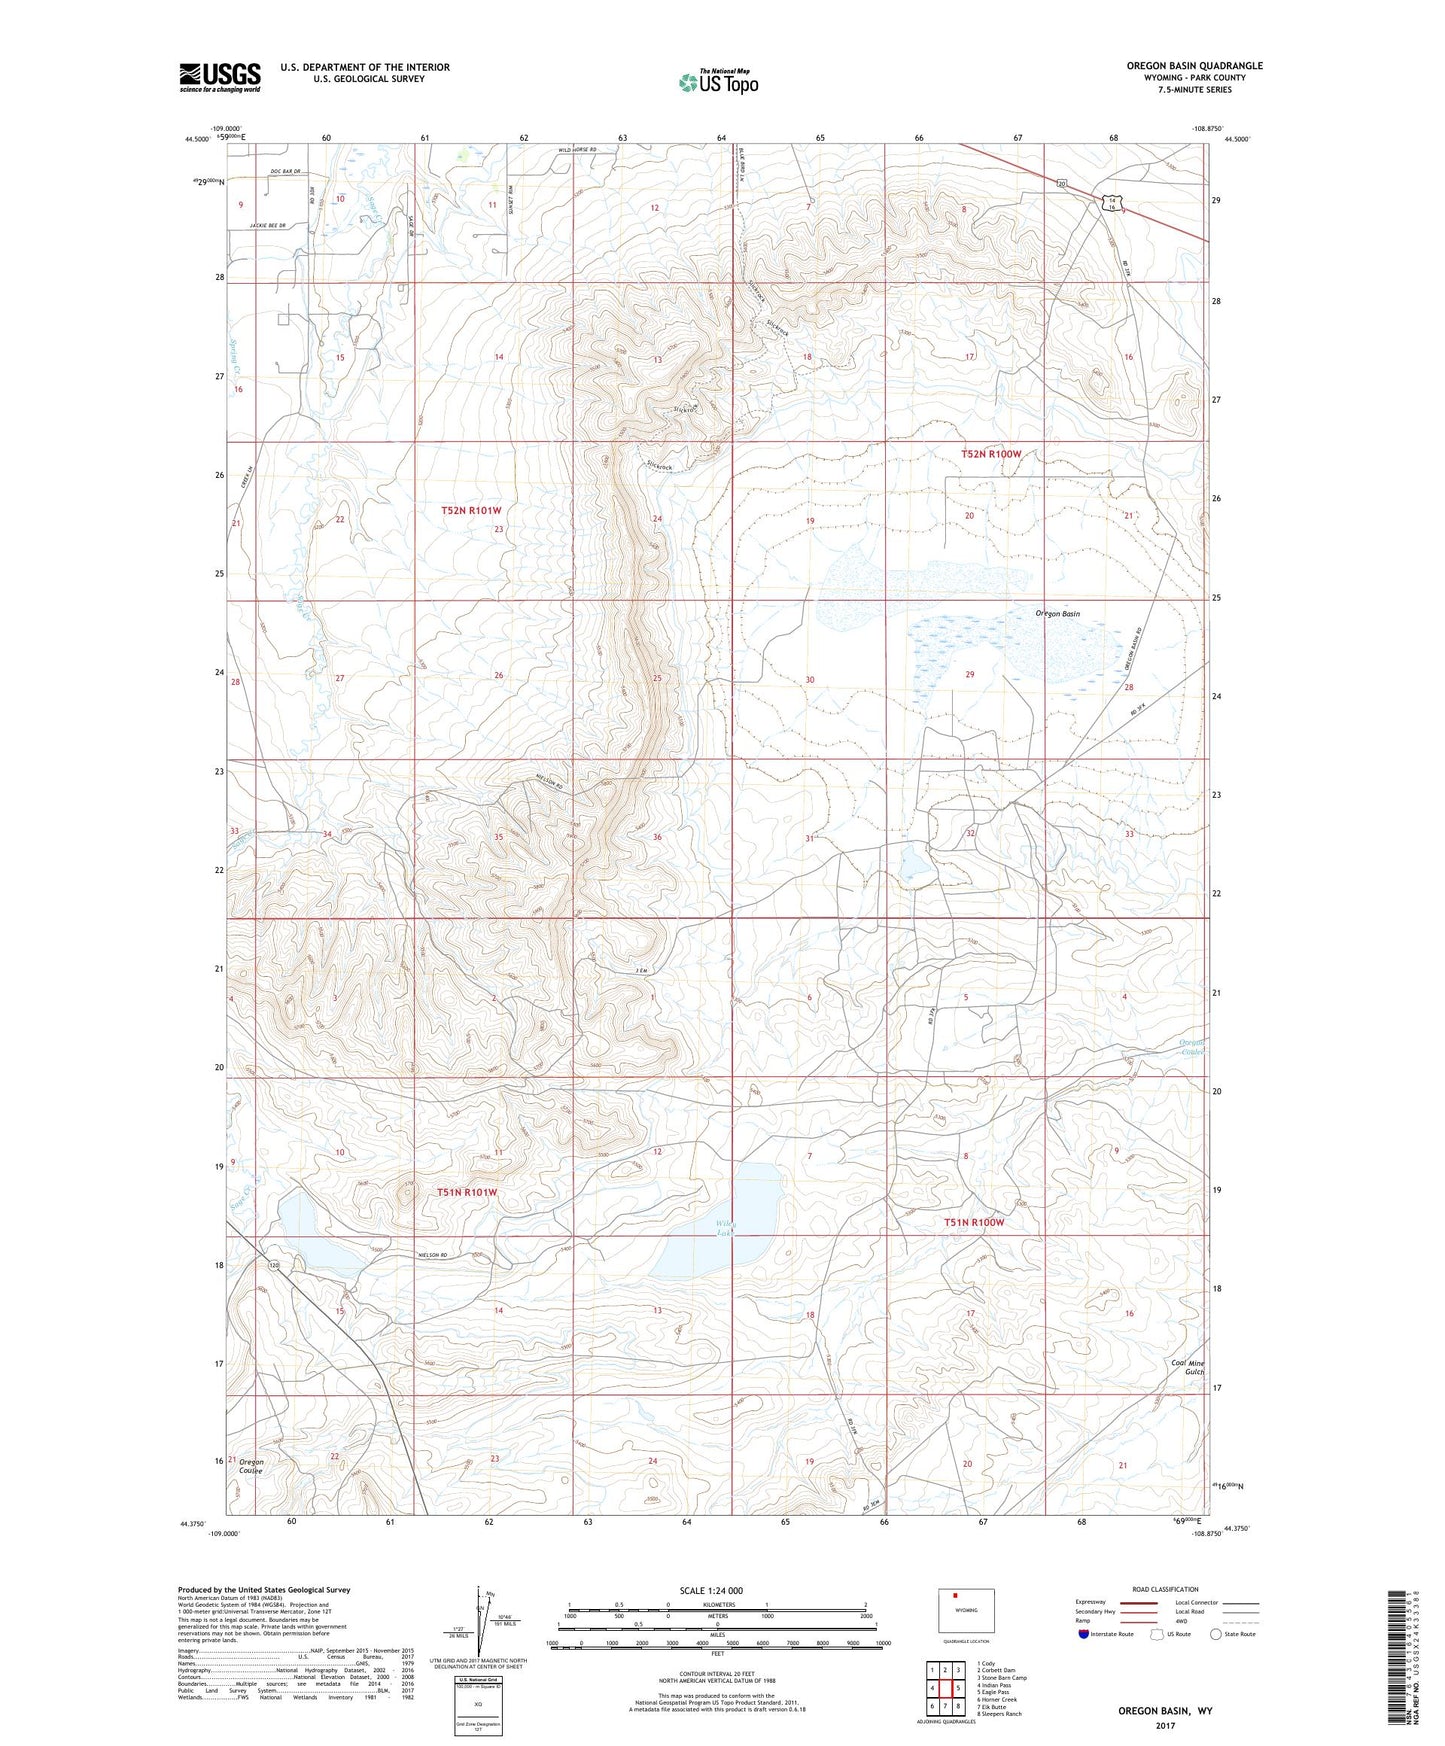 Oregon Basin Wyoming US Topo Map Image